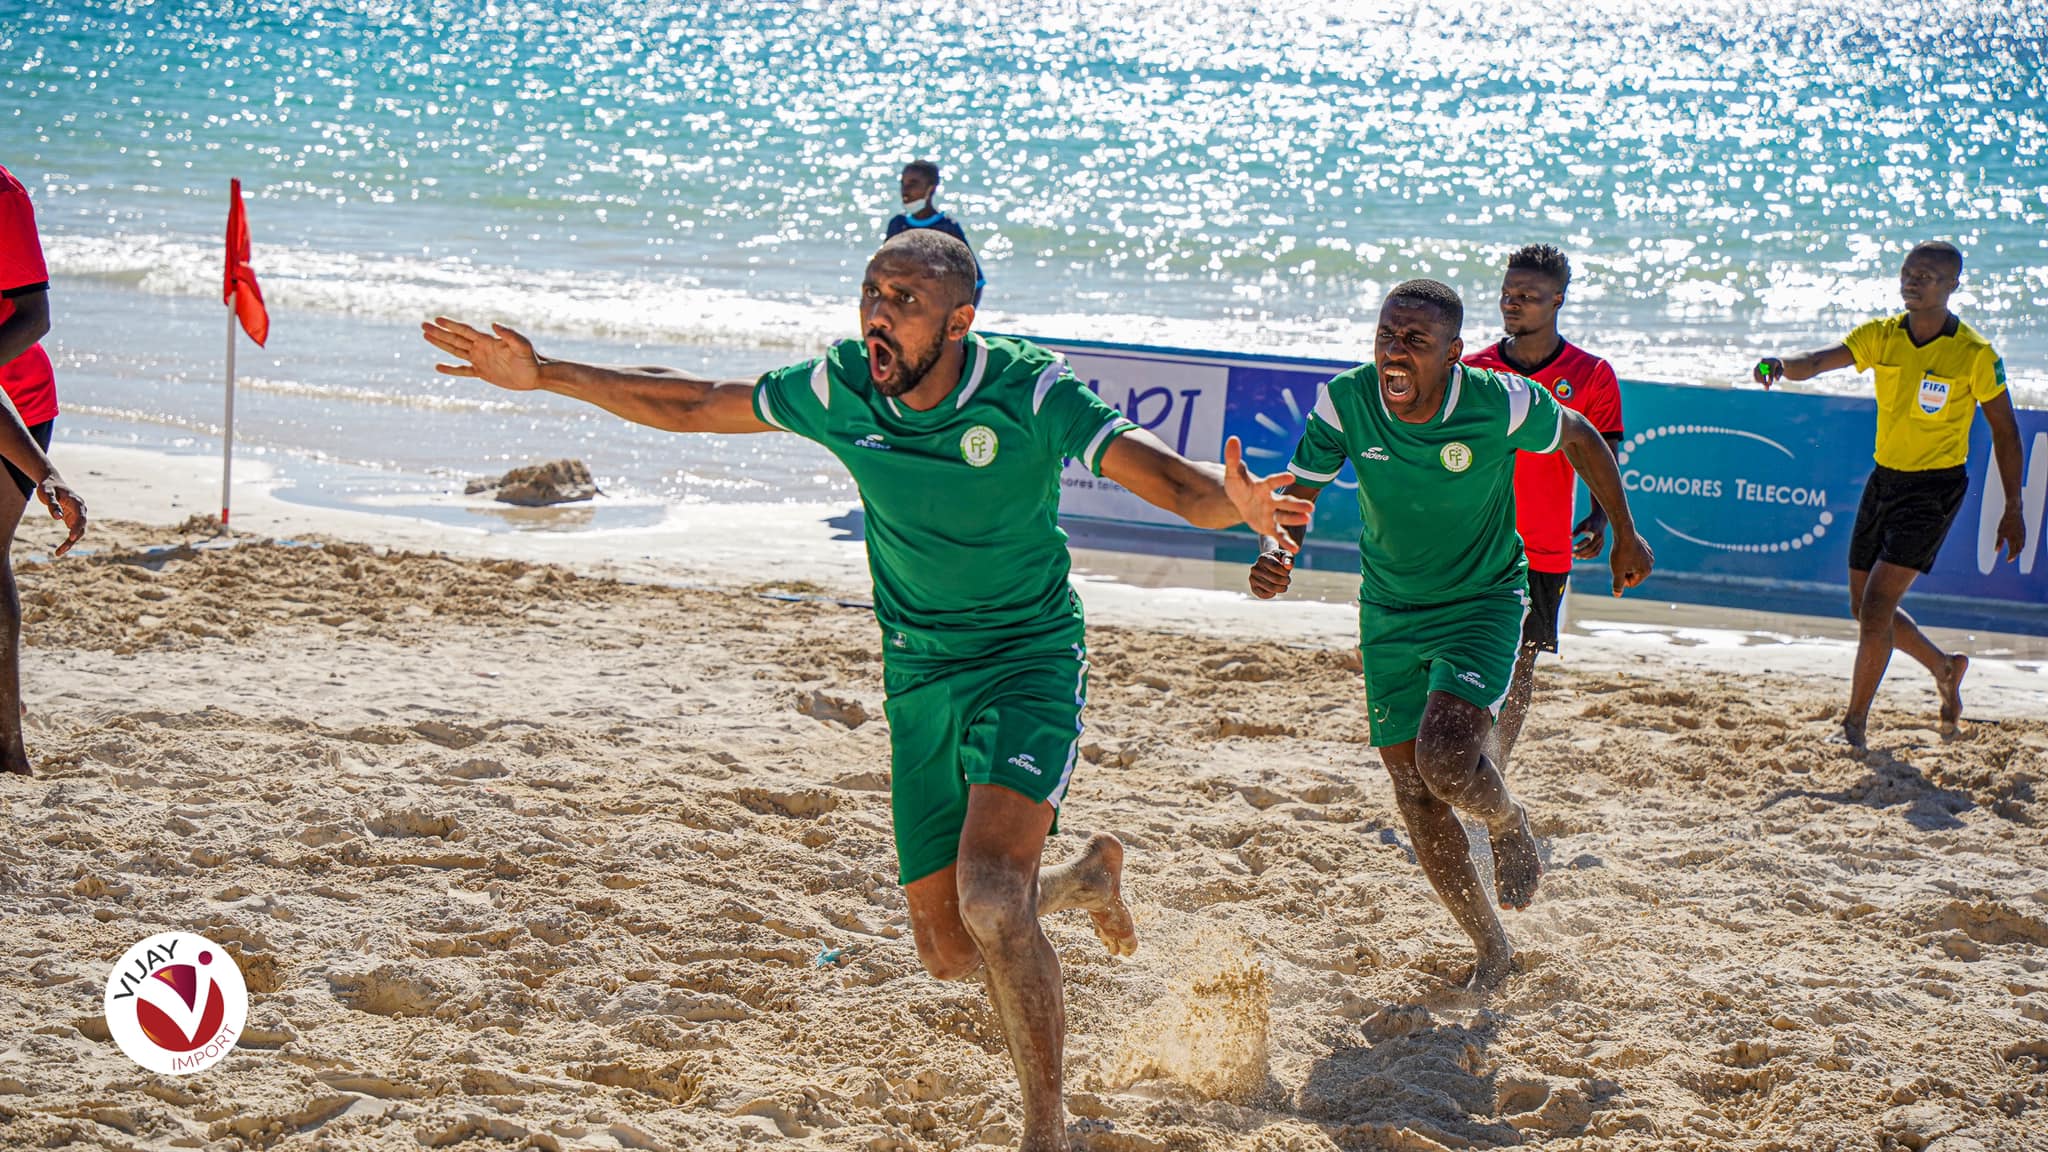 Comores, Le calendrier des Comores pour le Cosafa Beach Soccer 2021, Comoros Football 269 | Portail du football des Comores